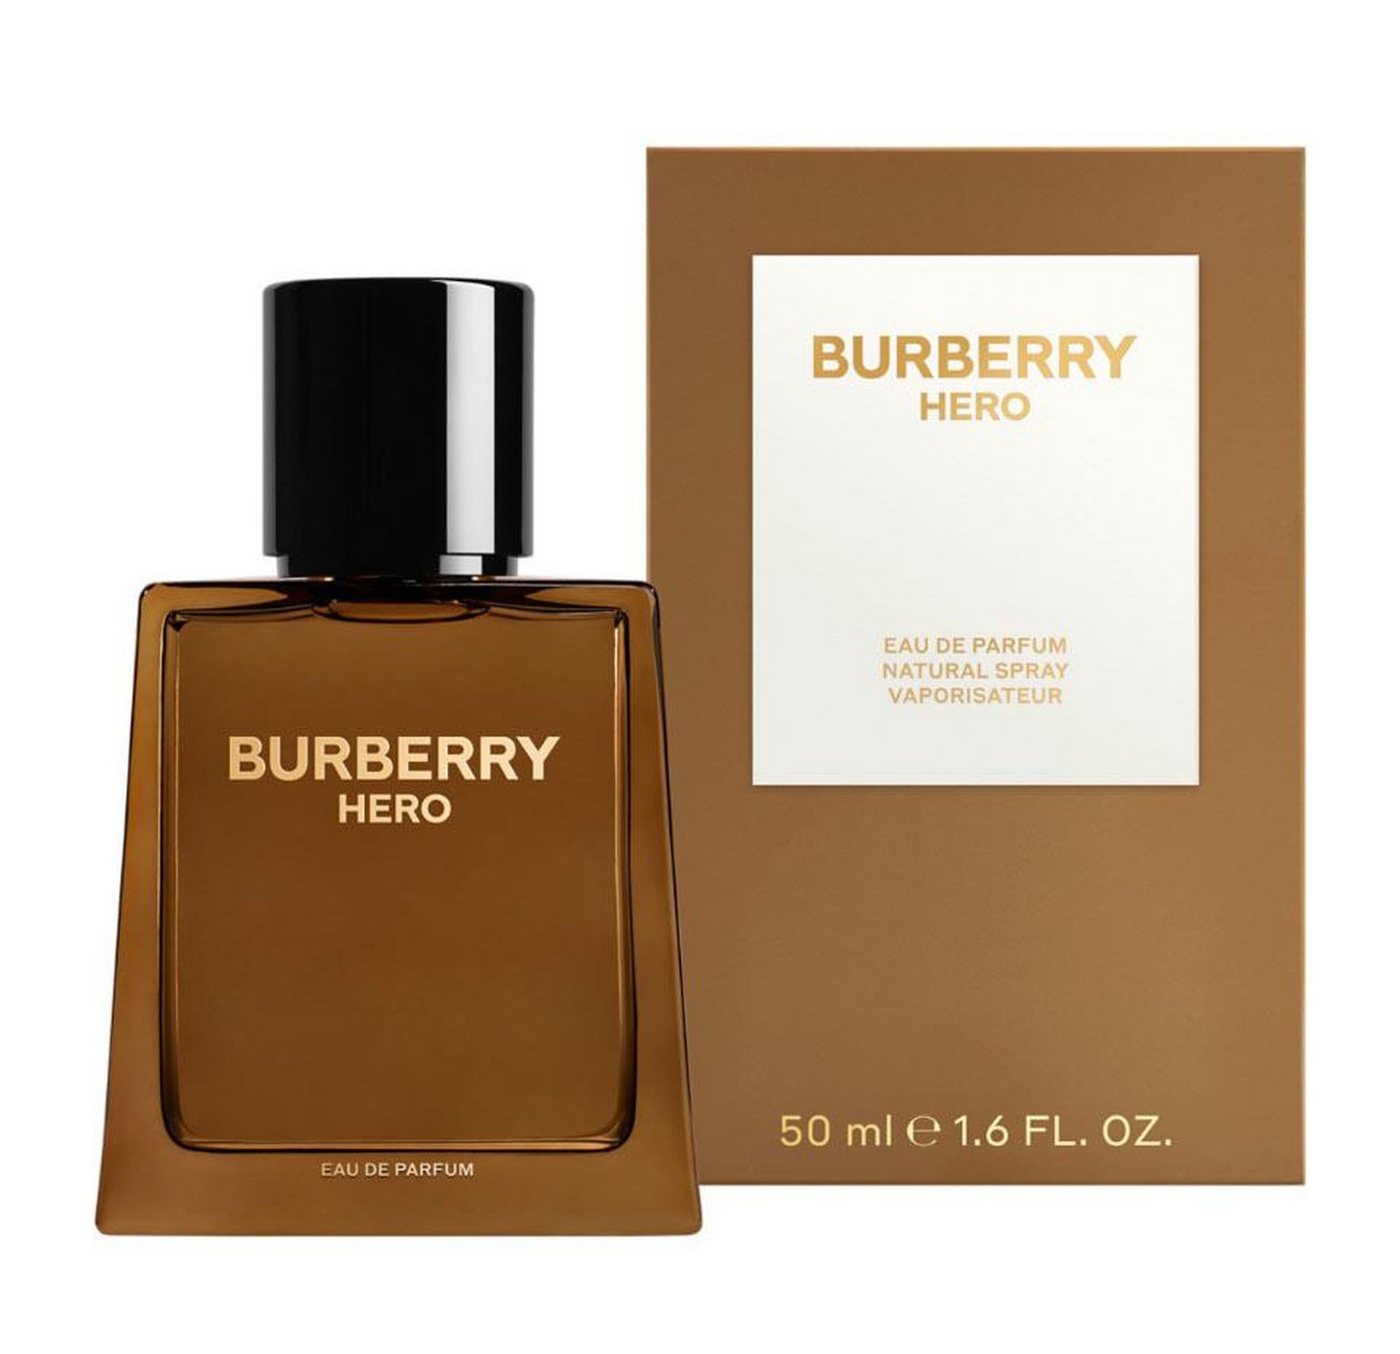 BURBERRY Eau de Parfum Hero Herrenduft von BURBERRY